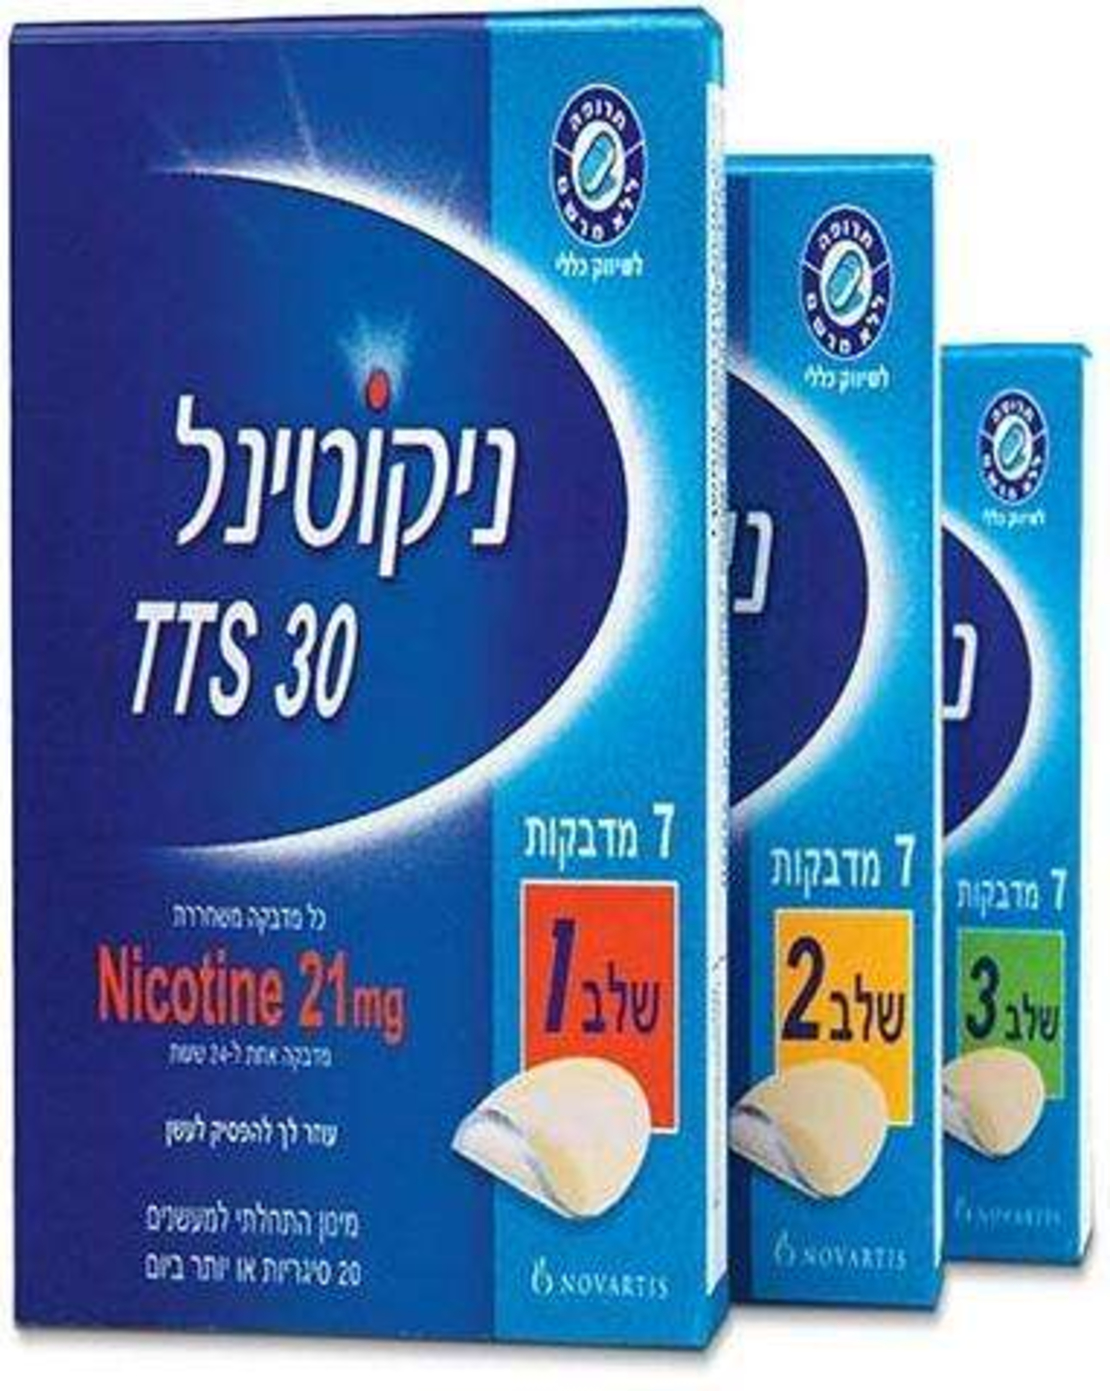 ניקוטינל מדבקות - מדבקות לגמילה מעישון Nicotinel Patches